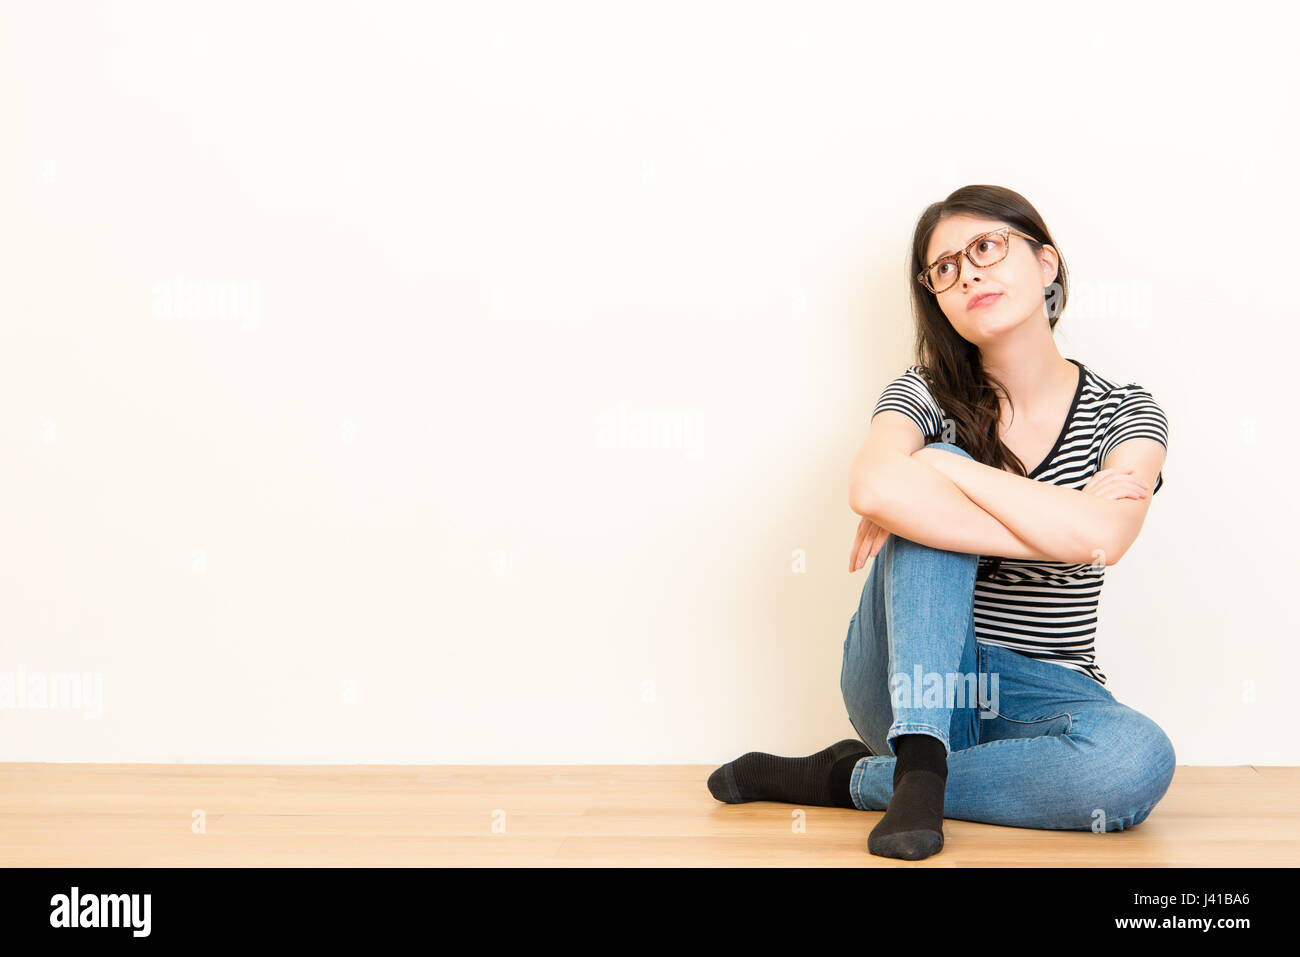 sehr schön verwirrt Student Frau denkt und träumt mit Freizeitkleidung auf Holzboden über leere Kopie Raum weiße Wand Hintergrund sitzt. Stockfoto